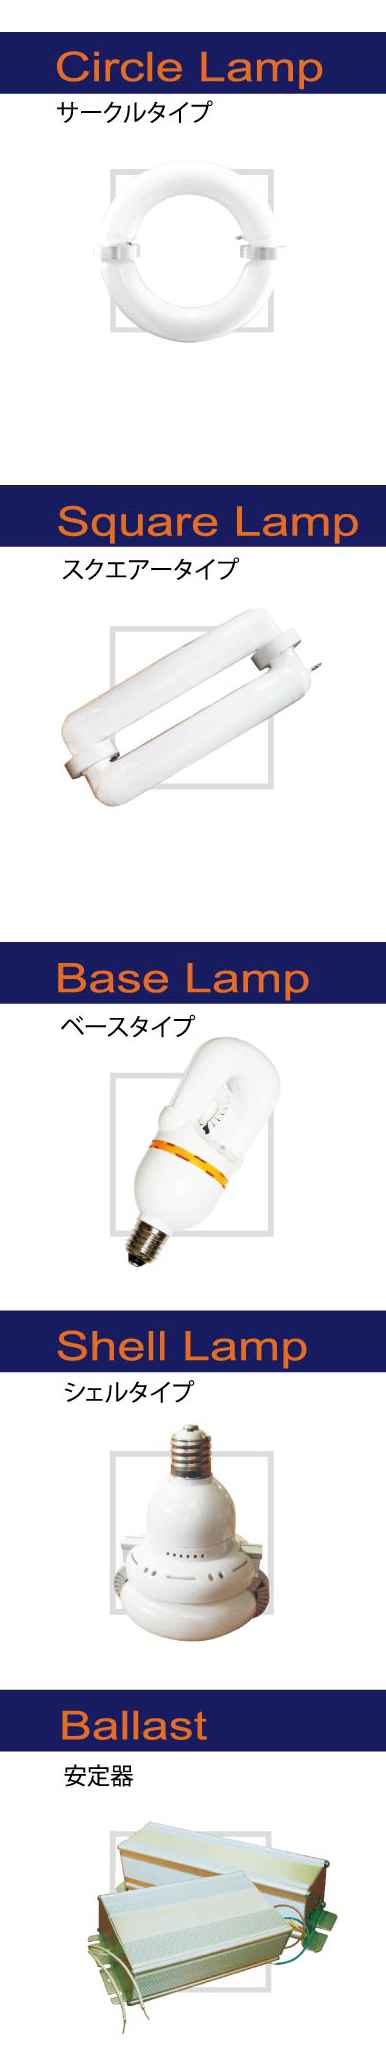 lamp models